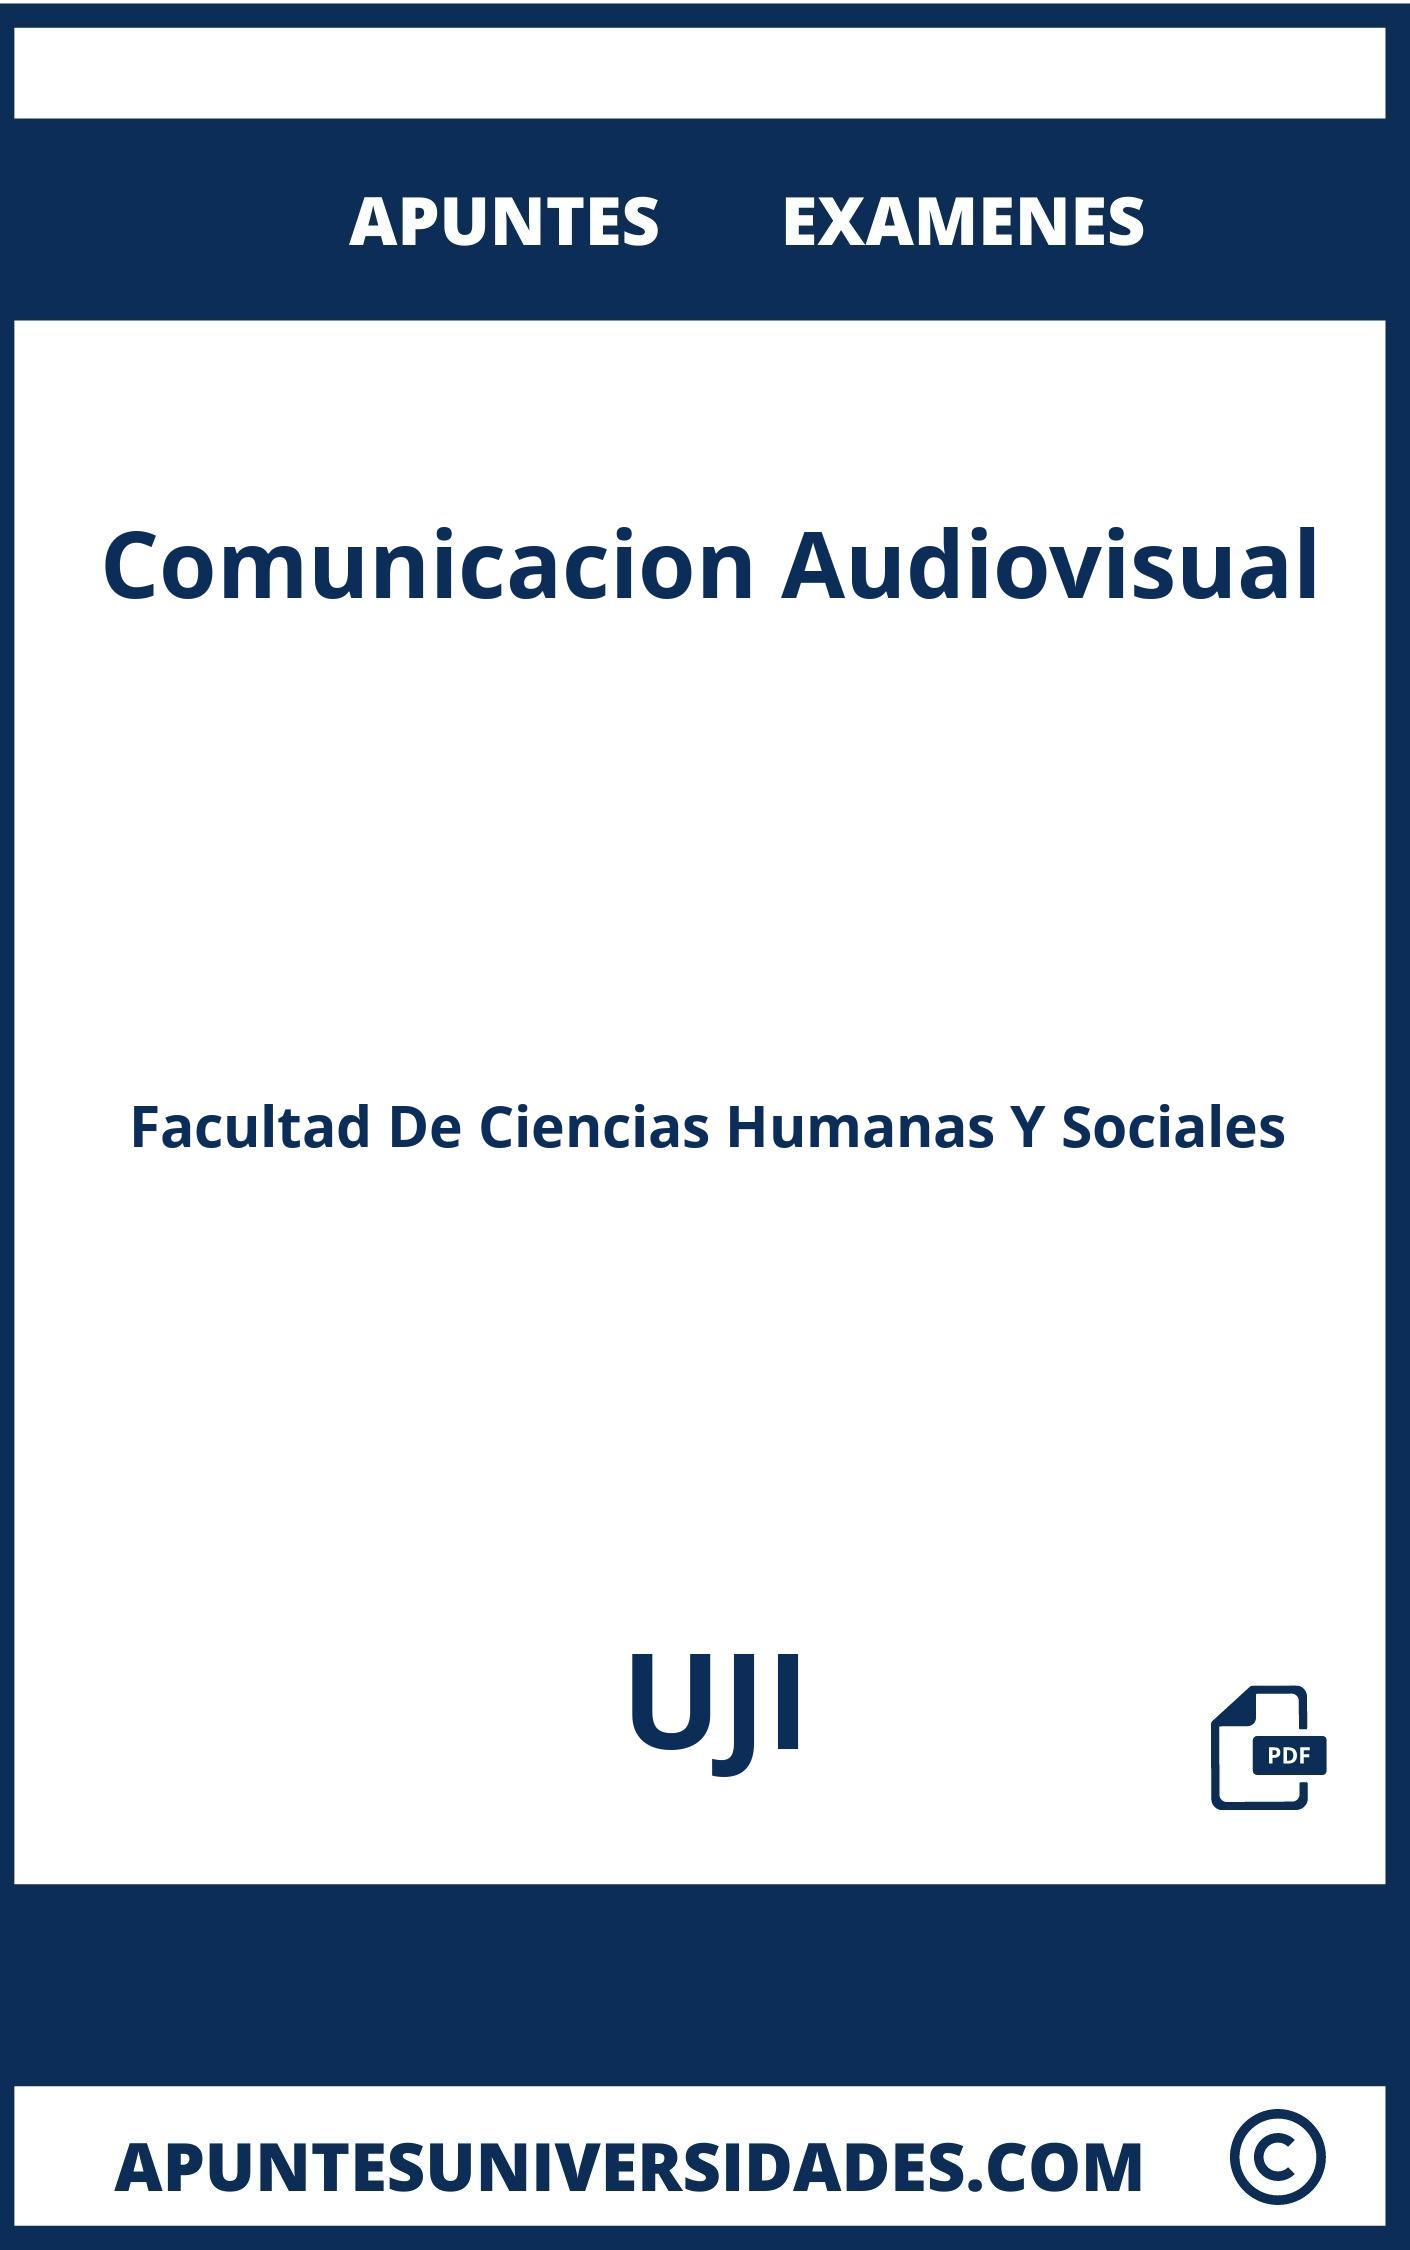 Examenes y Apuntes Comunicacion Audiovisual UJI